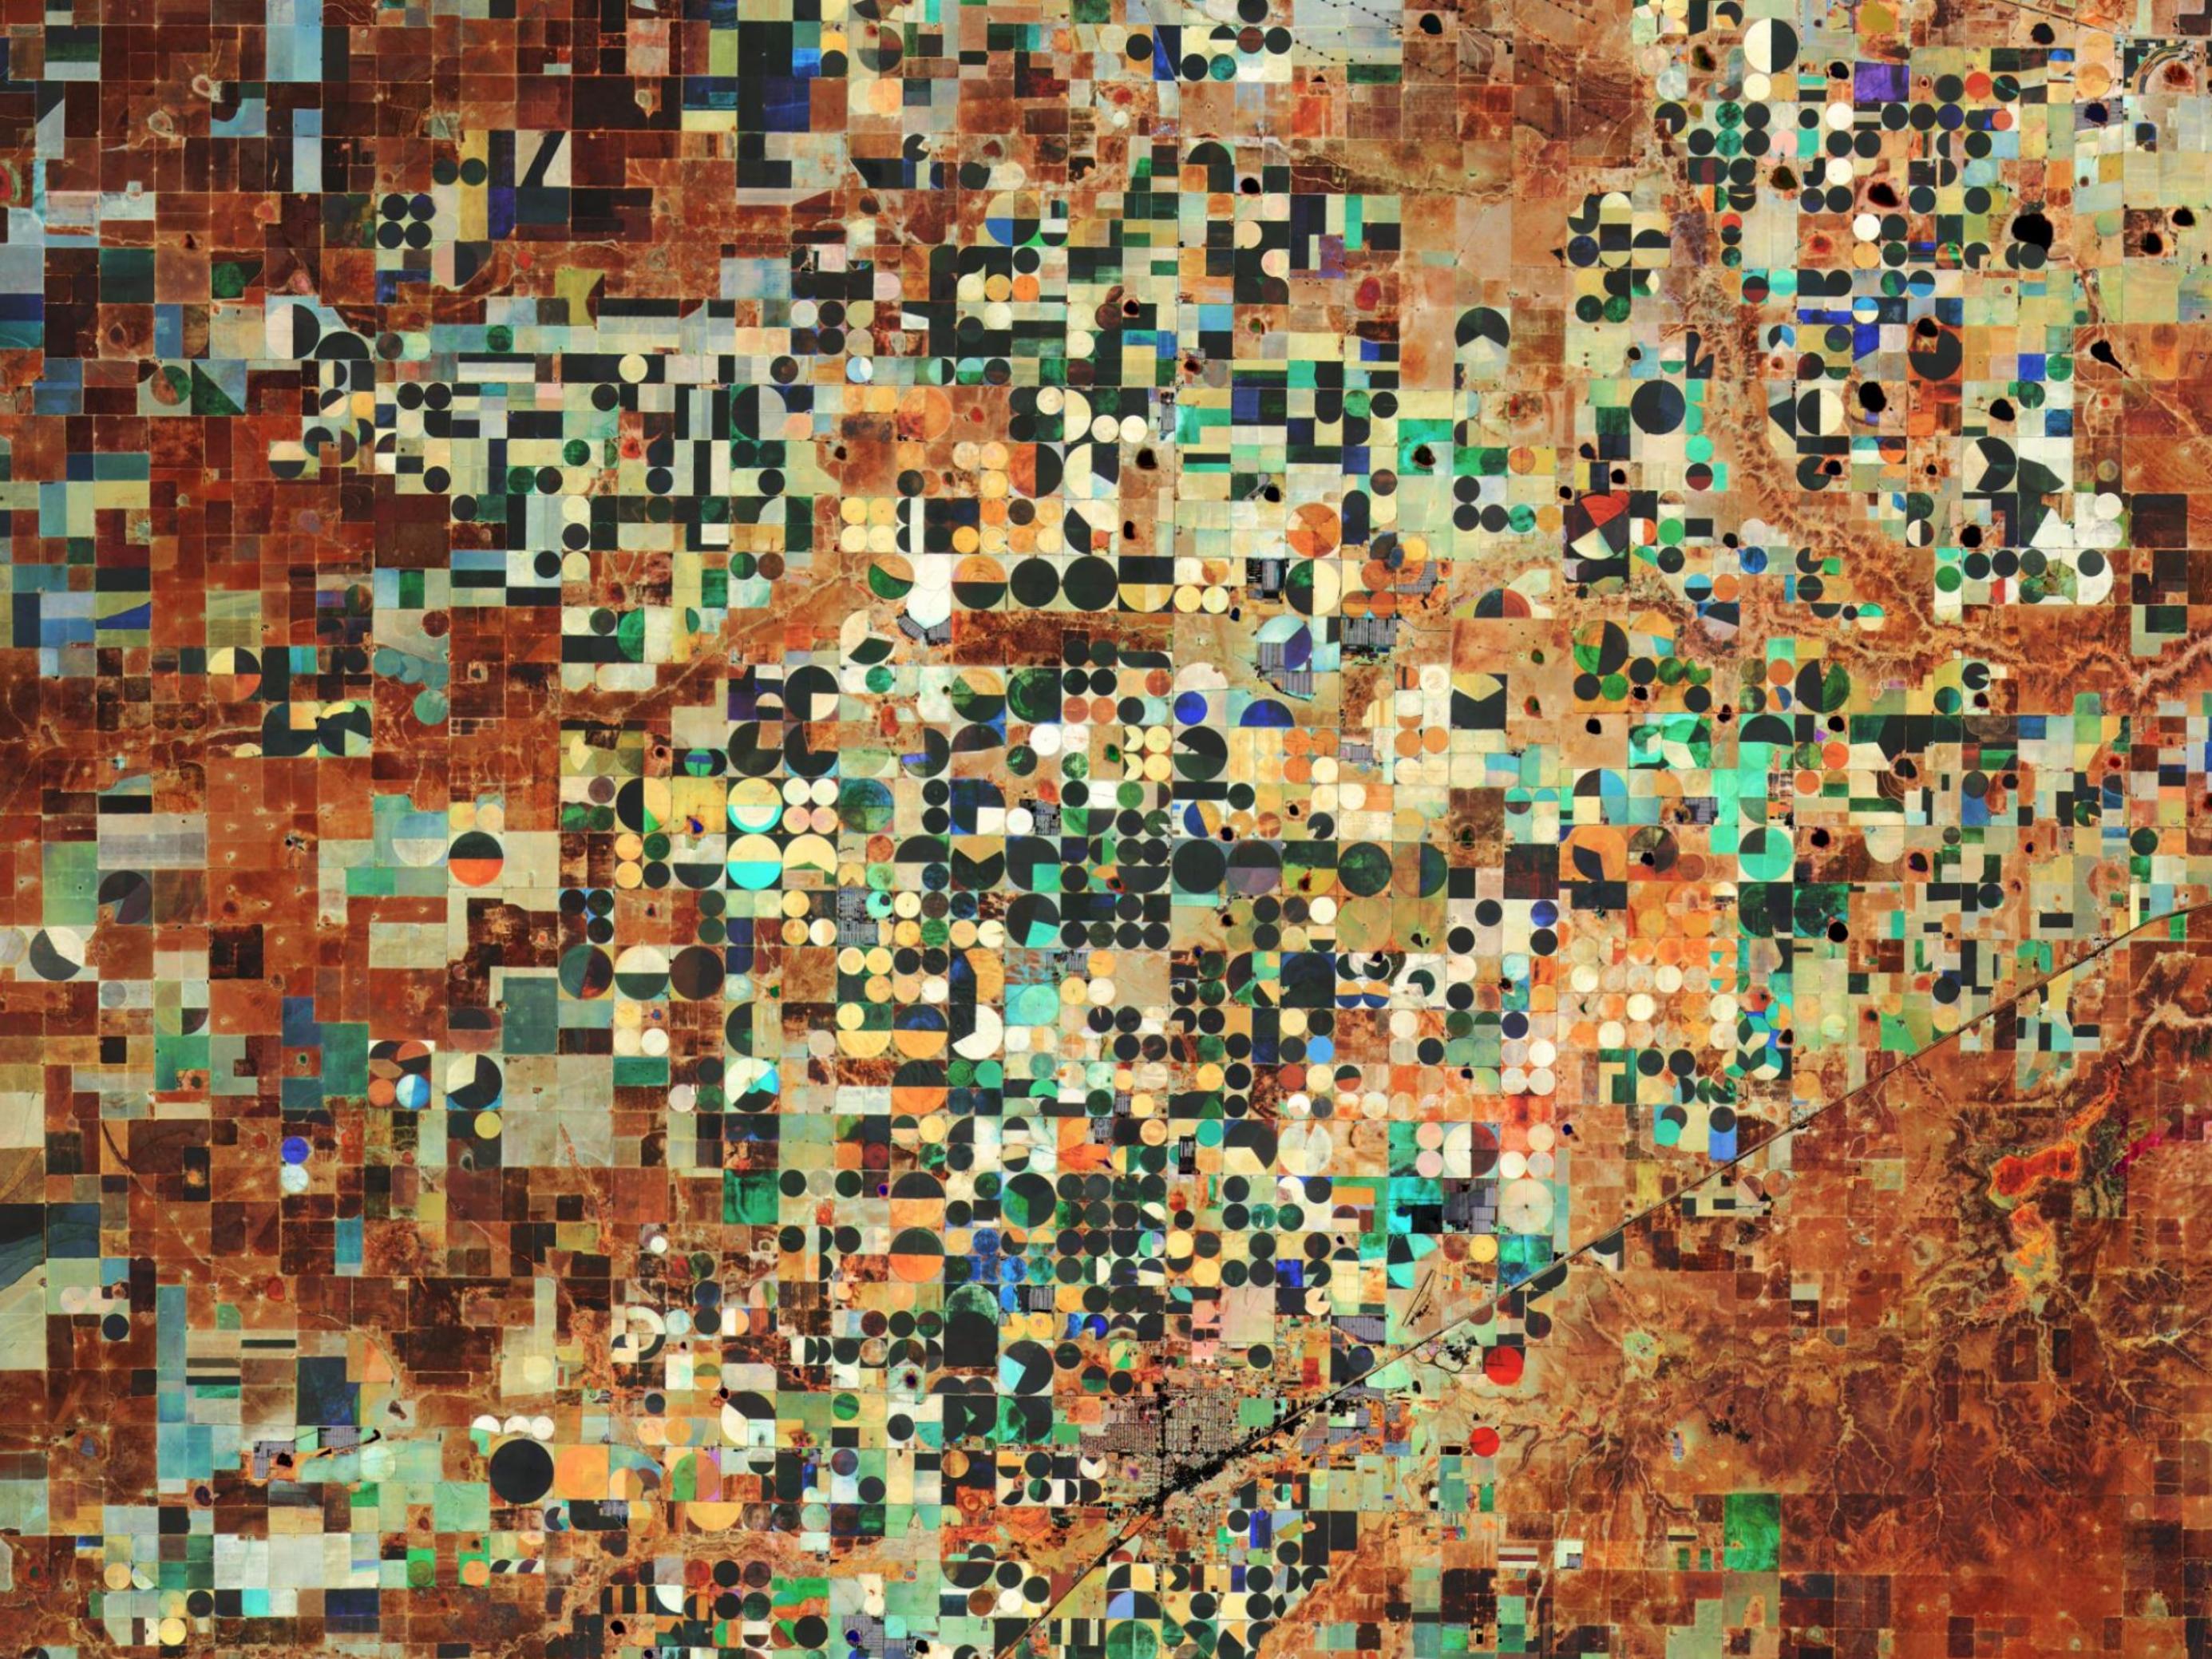 Ein wirr wirkendes Mosaik von bunten kreisrunden Flächen, jede davon ist der Radius einer Bewässerungsanlage.